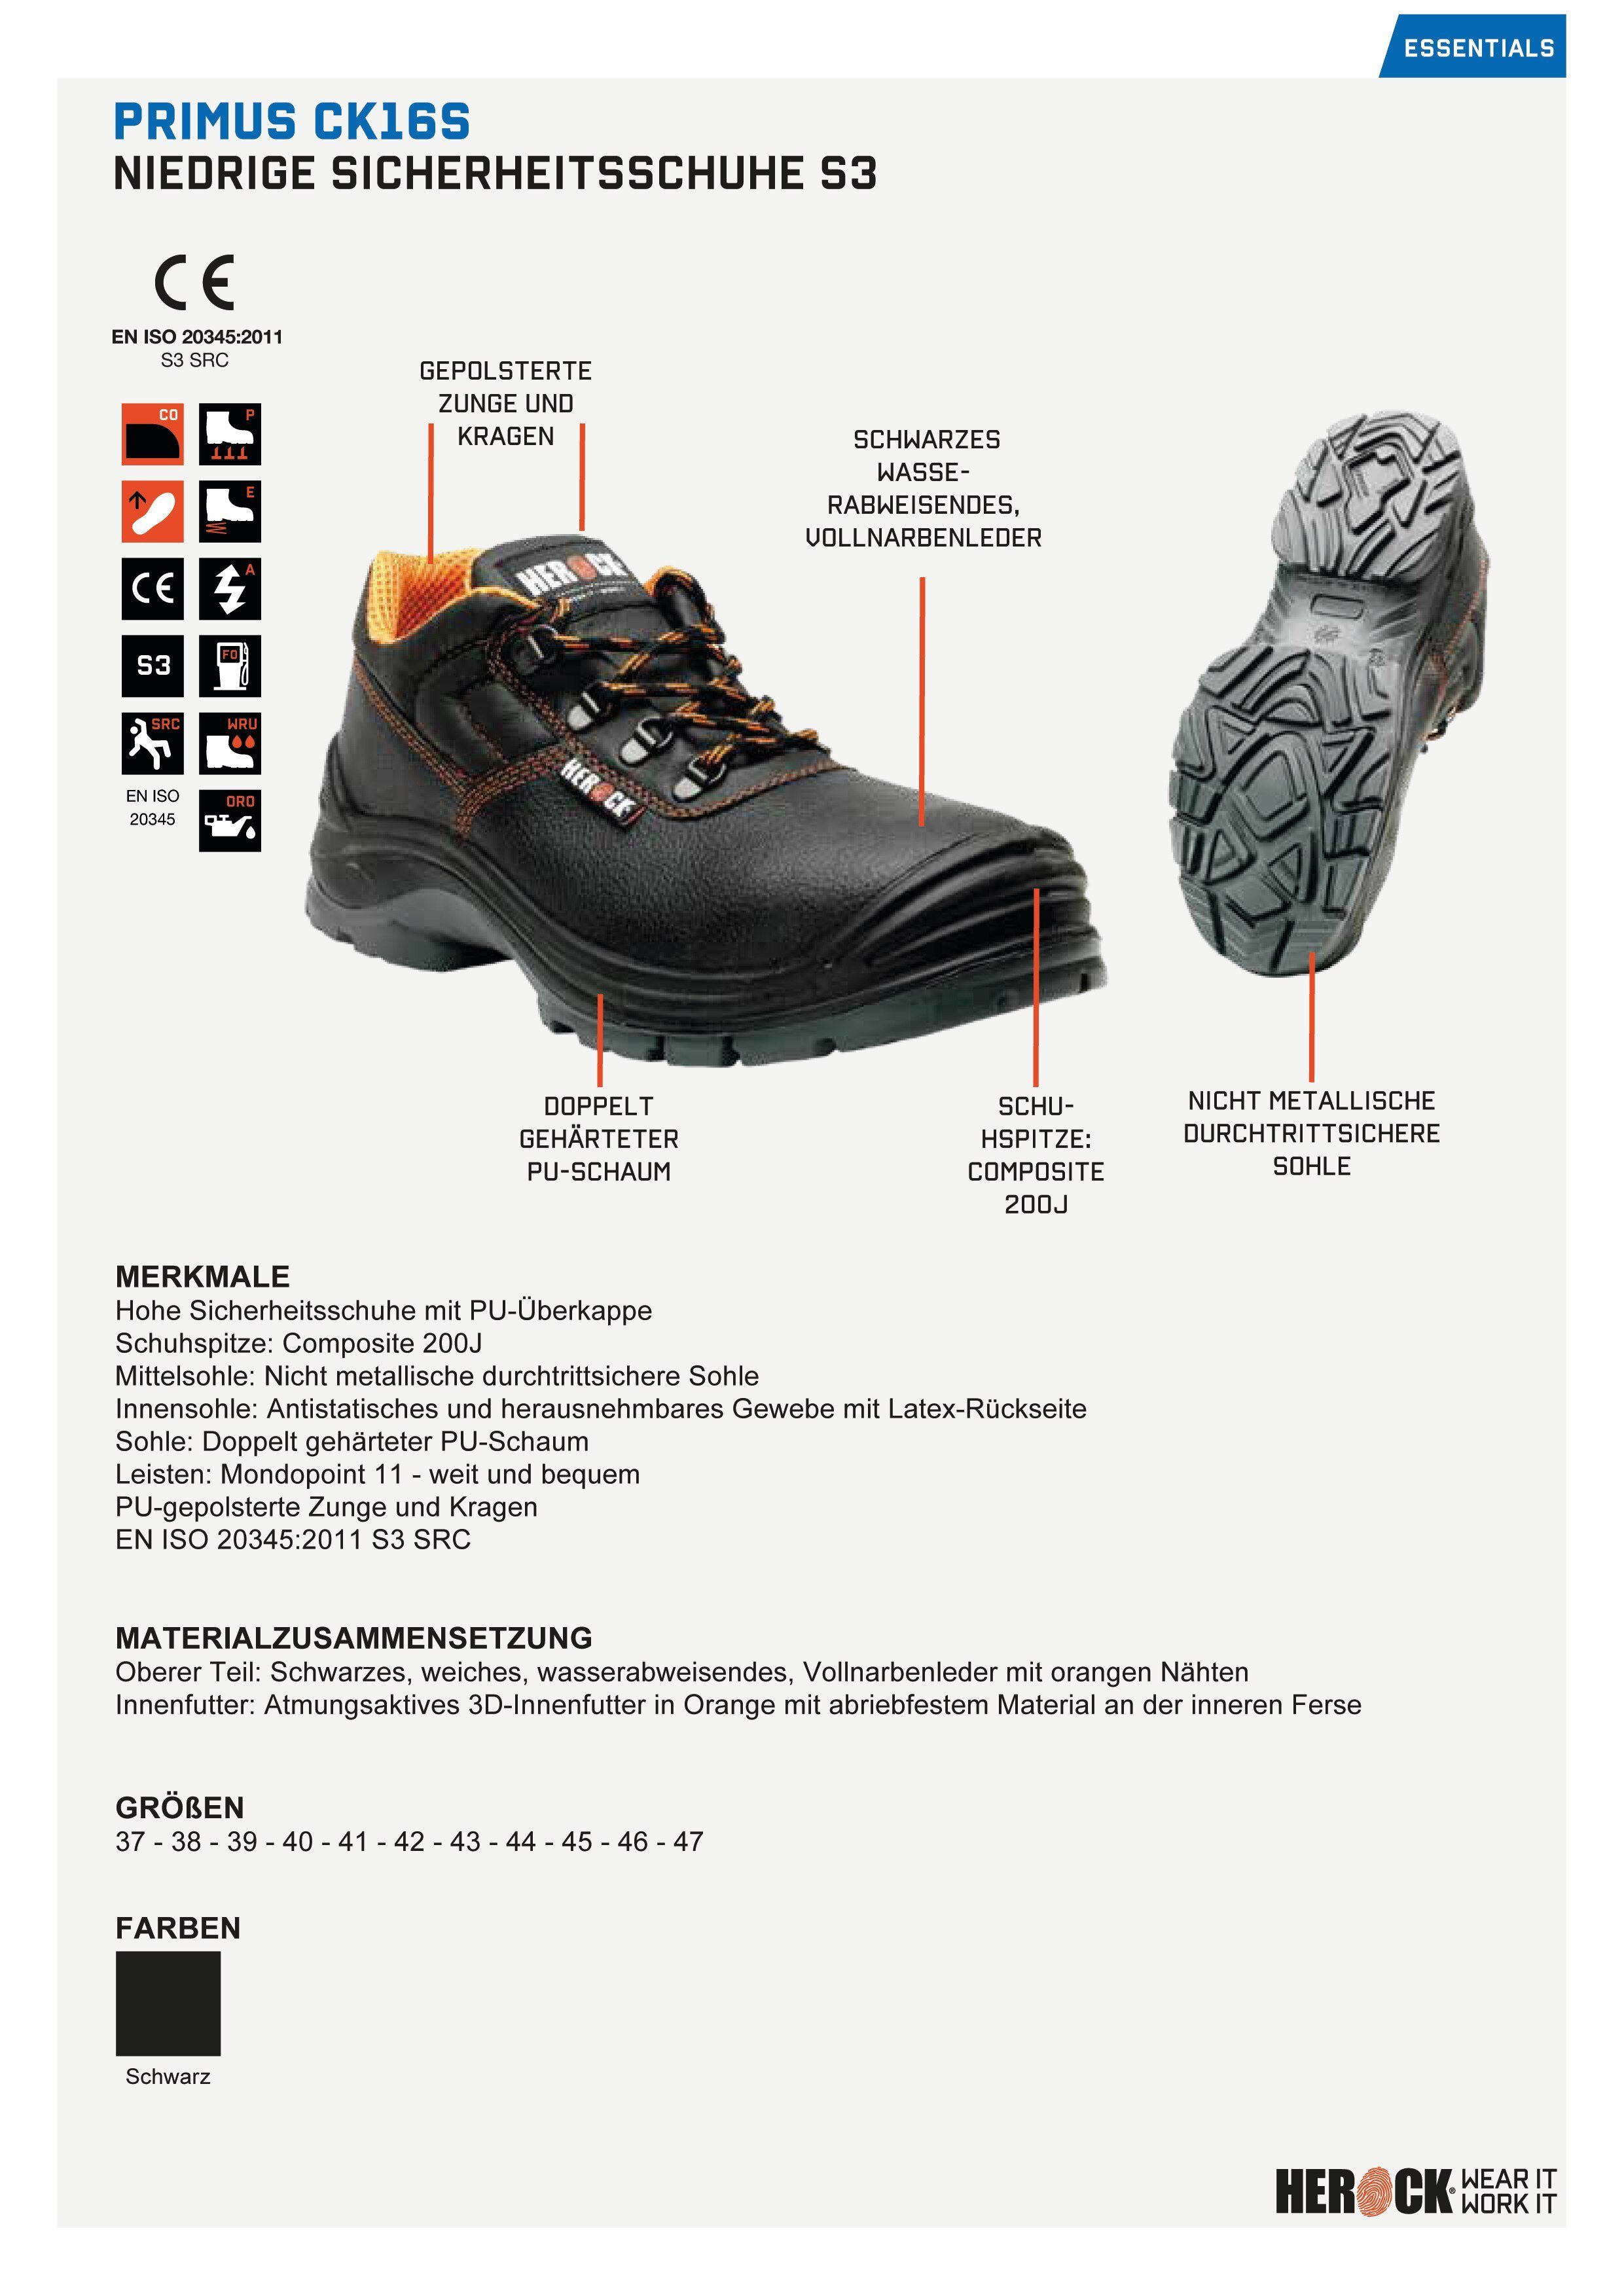 weit Schuhe bequem, Primus Klasse durchtrittsicher PU-Überkappe, Sicherheitsschuh Herock leicht, S3 S3, und Low Compo